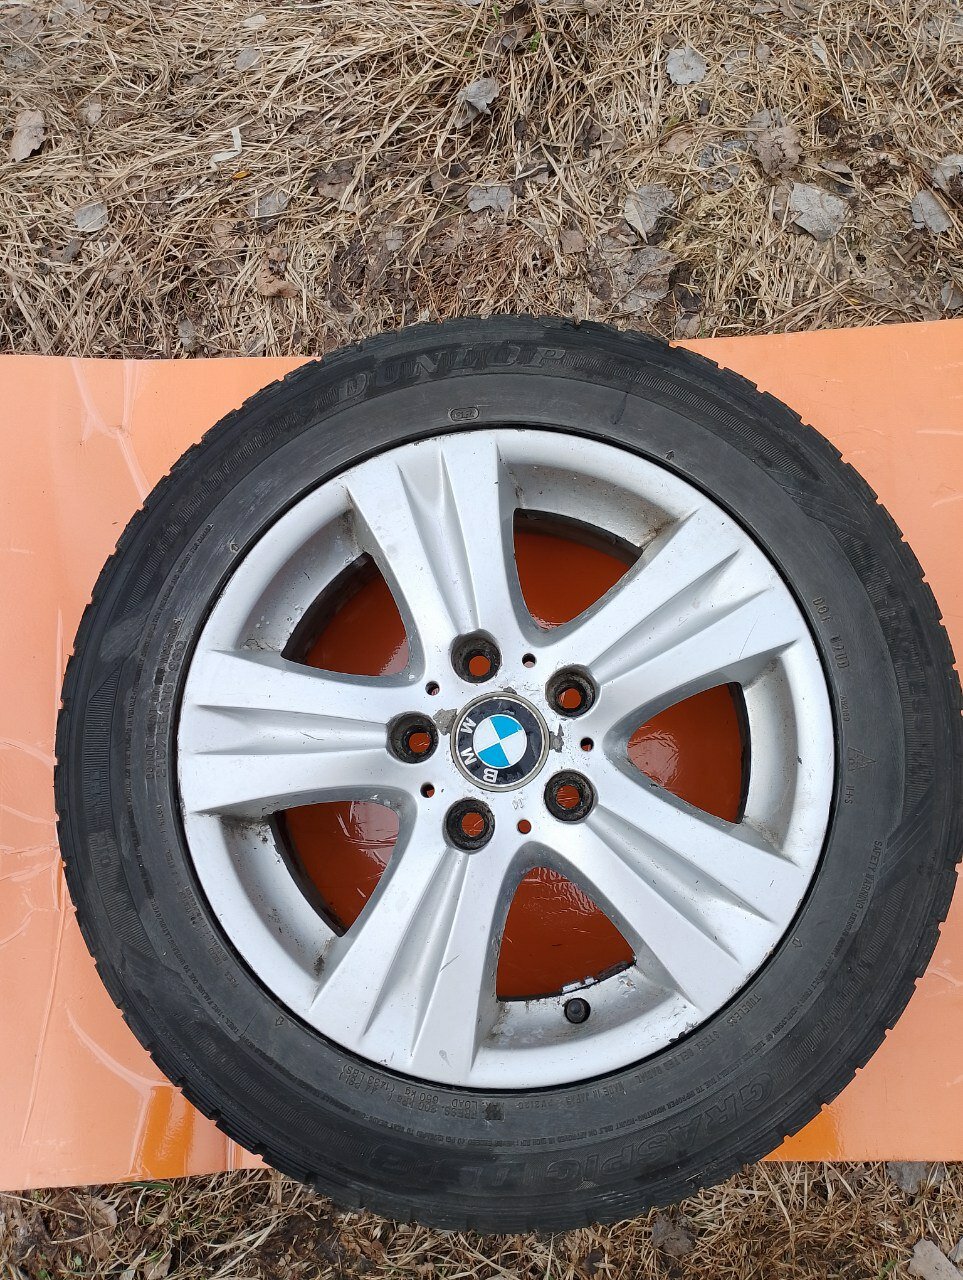 Комплект колес BMW 5/120/7JXR16 ET44 D72.6 в сборе с летней резиной Dunlop Graspic DS3 215/55 91V